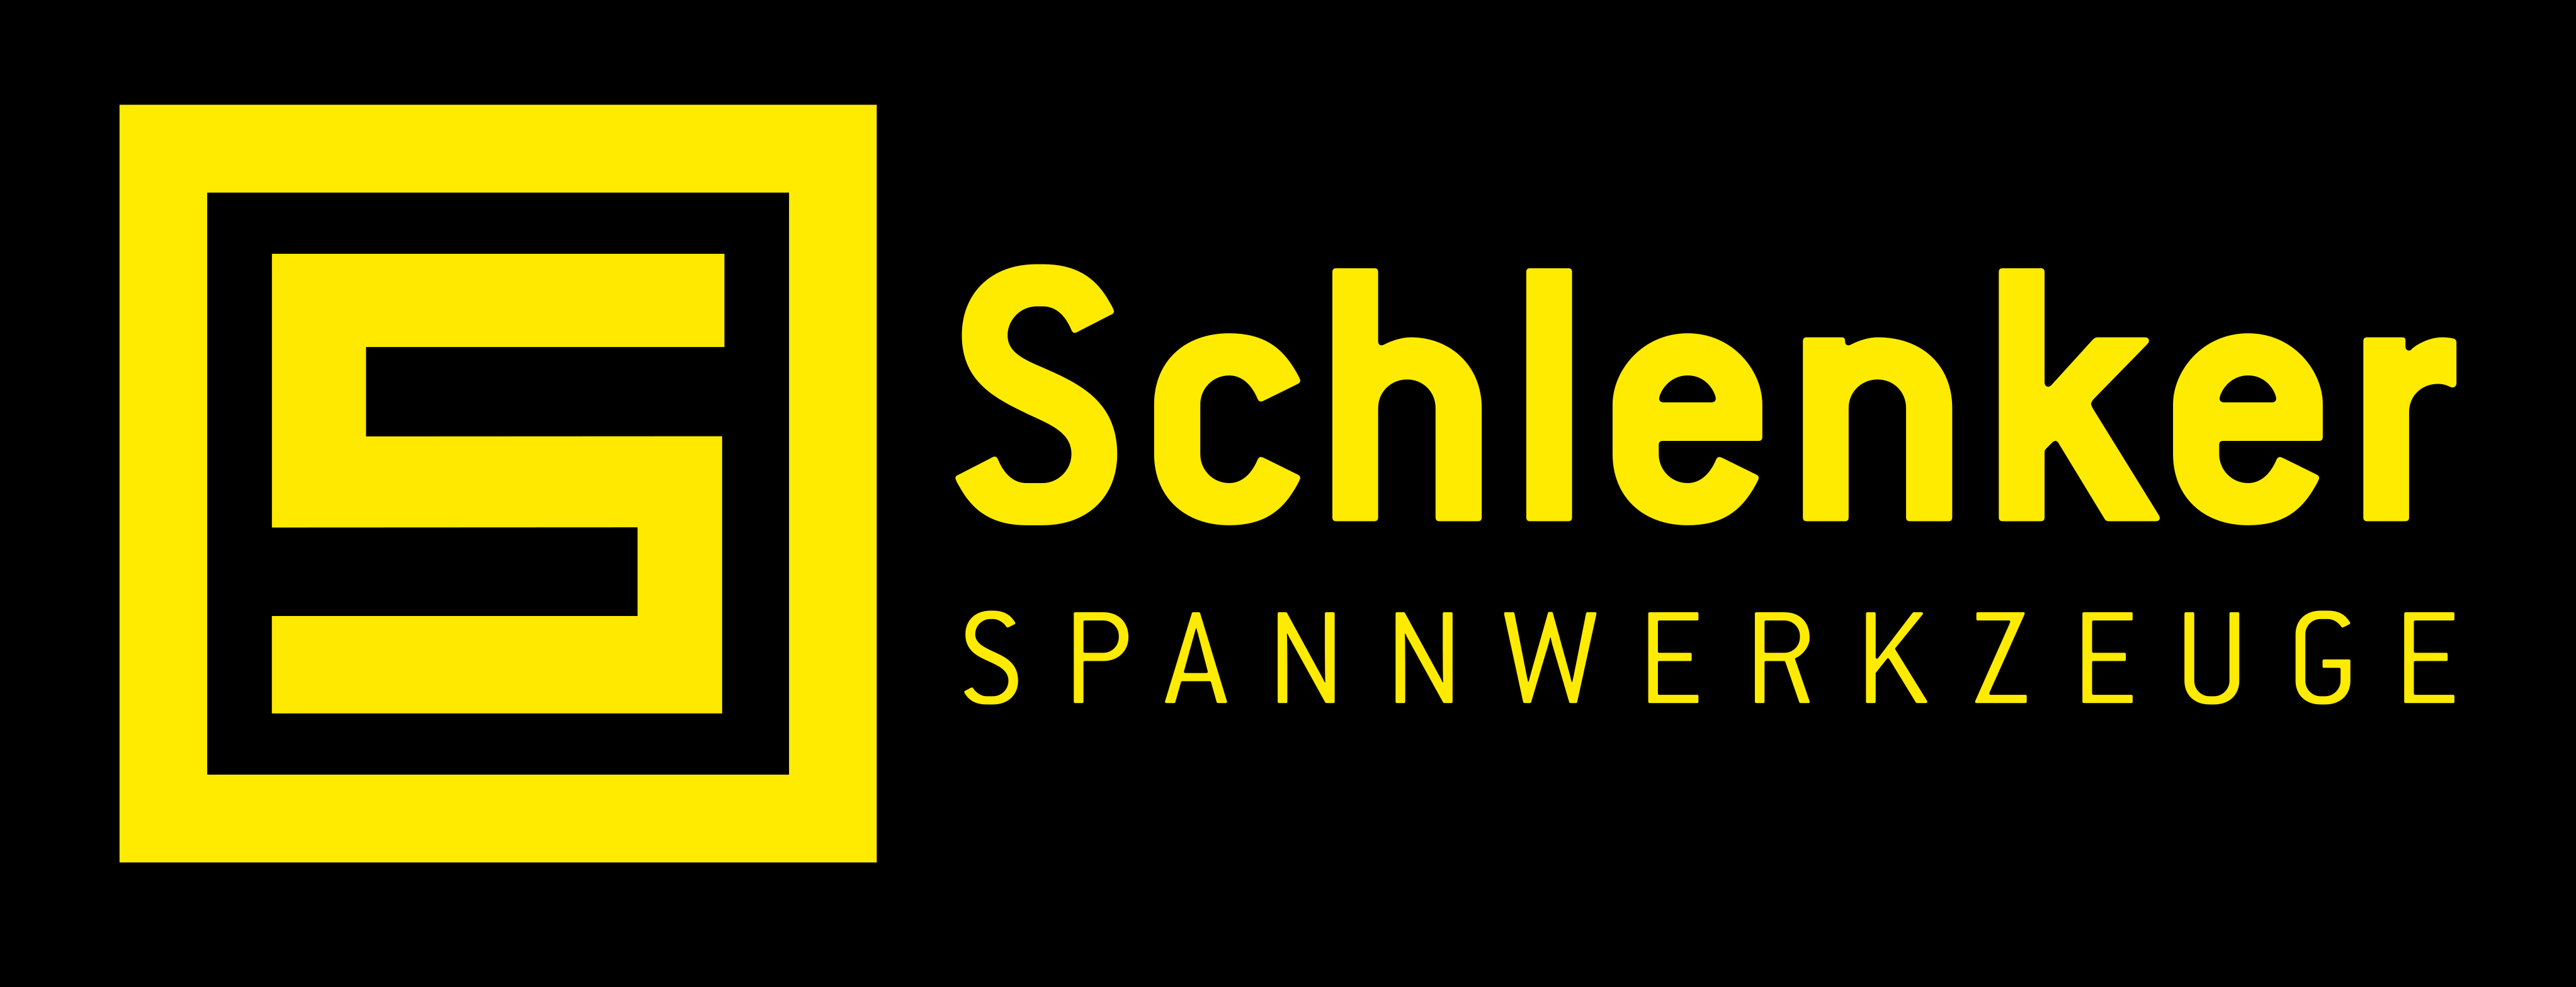 Schlenker_Spannwerkzeuge_logo_v2.png